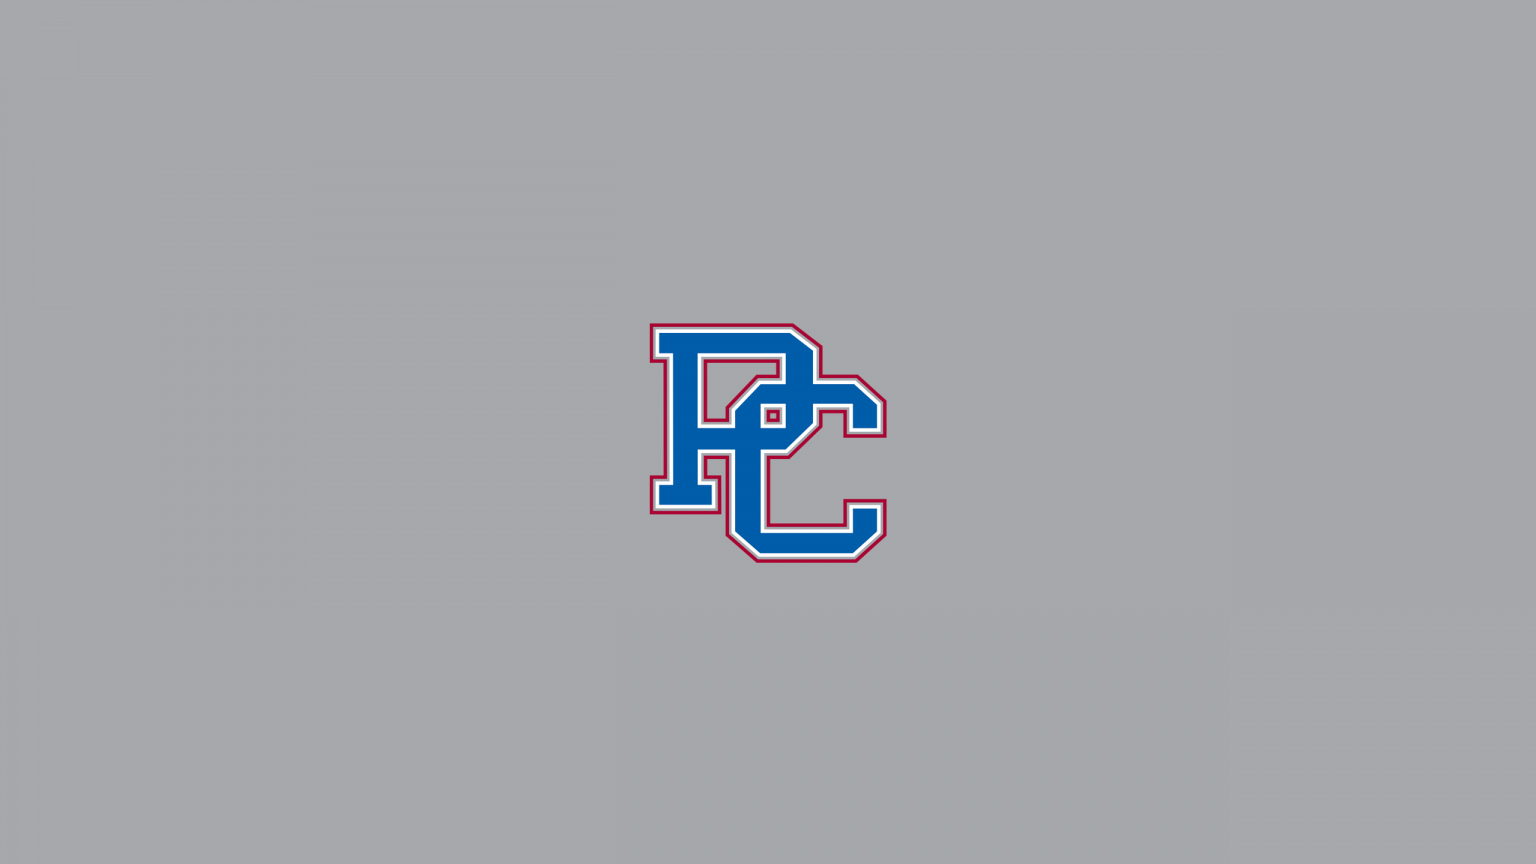 Presbyterian Blue Hose Basketball - NCAAB - Square Bettor